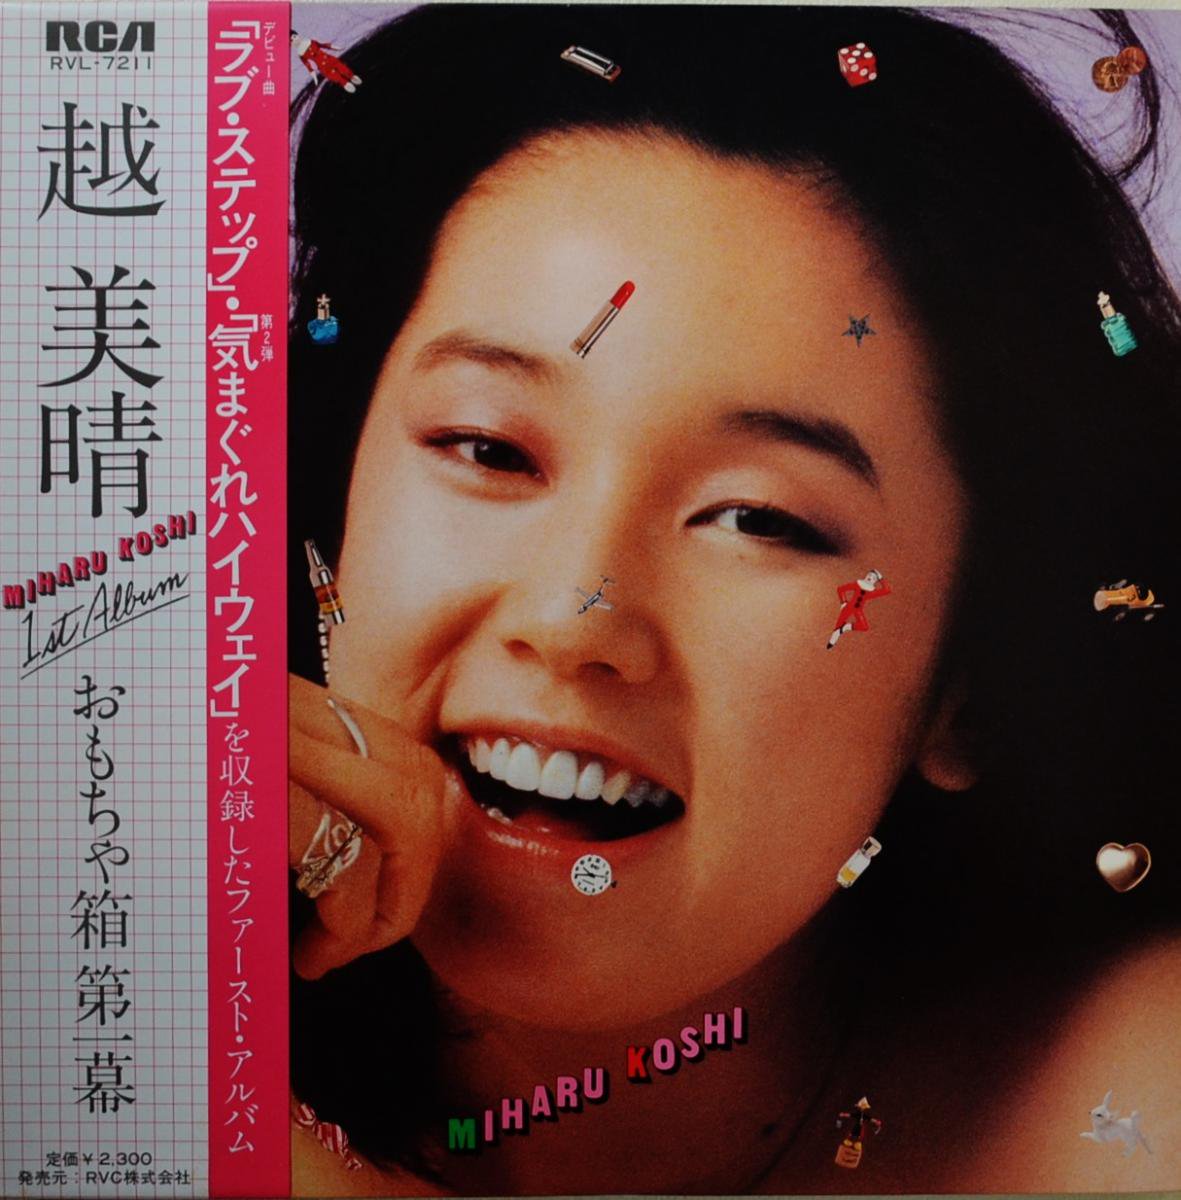 越　美晴 コシミハル MIHARU KOSHI / おもちゃ箱 第一幕 (LP)